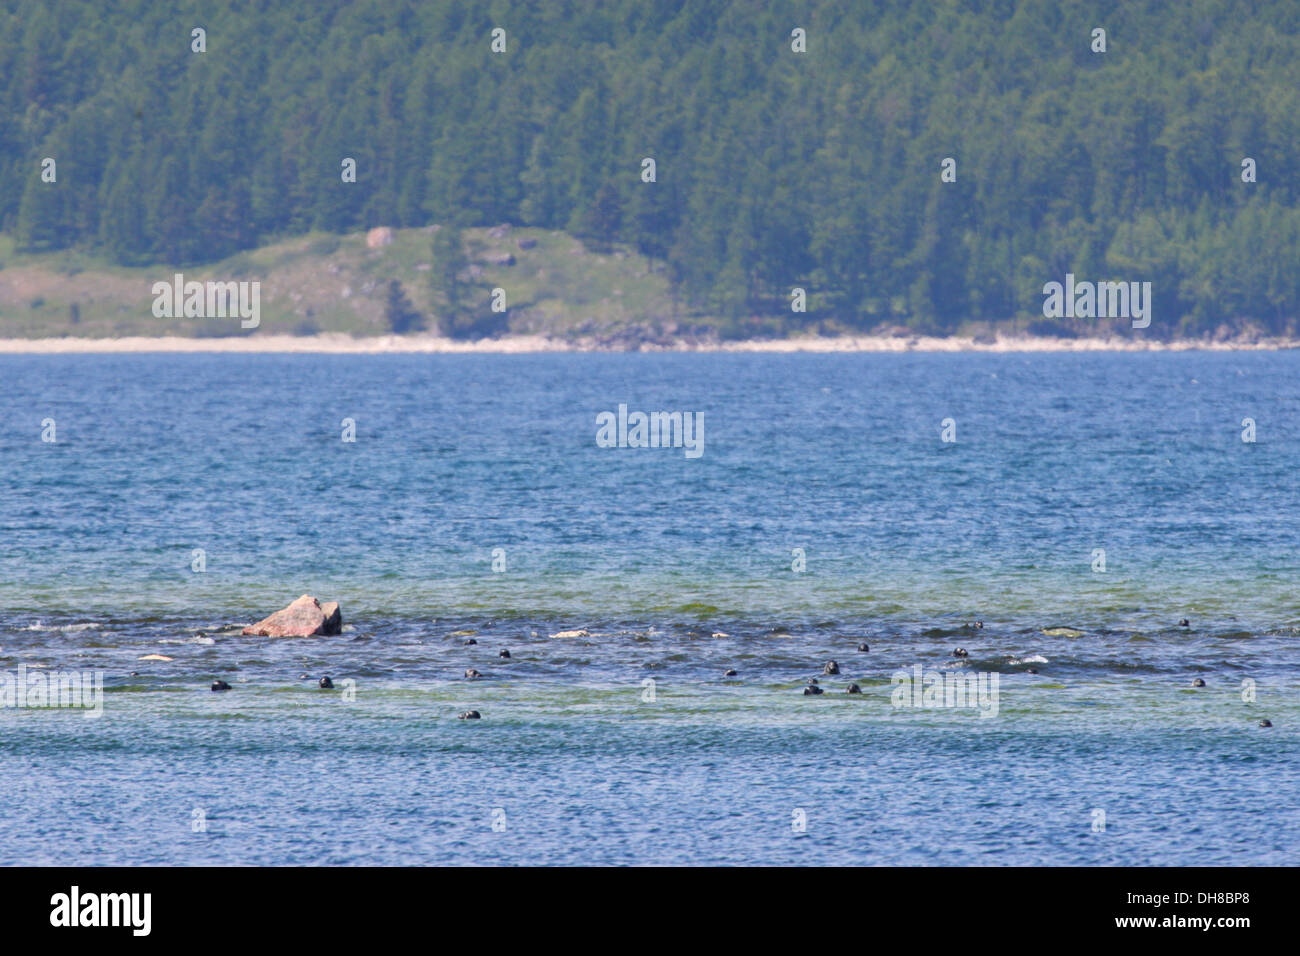 Le gîte des phoques également connu sous le nom de nerpa (Phoca sibirica) autour de l'Île Ouchkany, Lac Baikal, Russie Banque D'Images